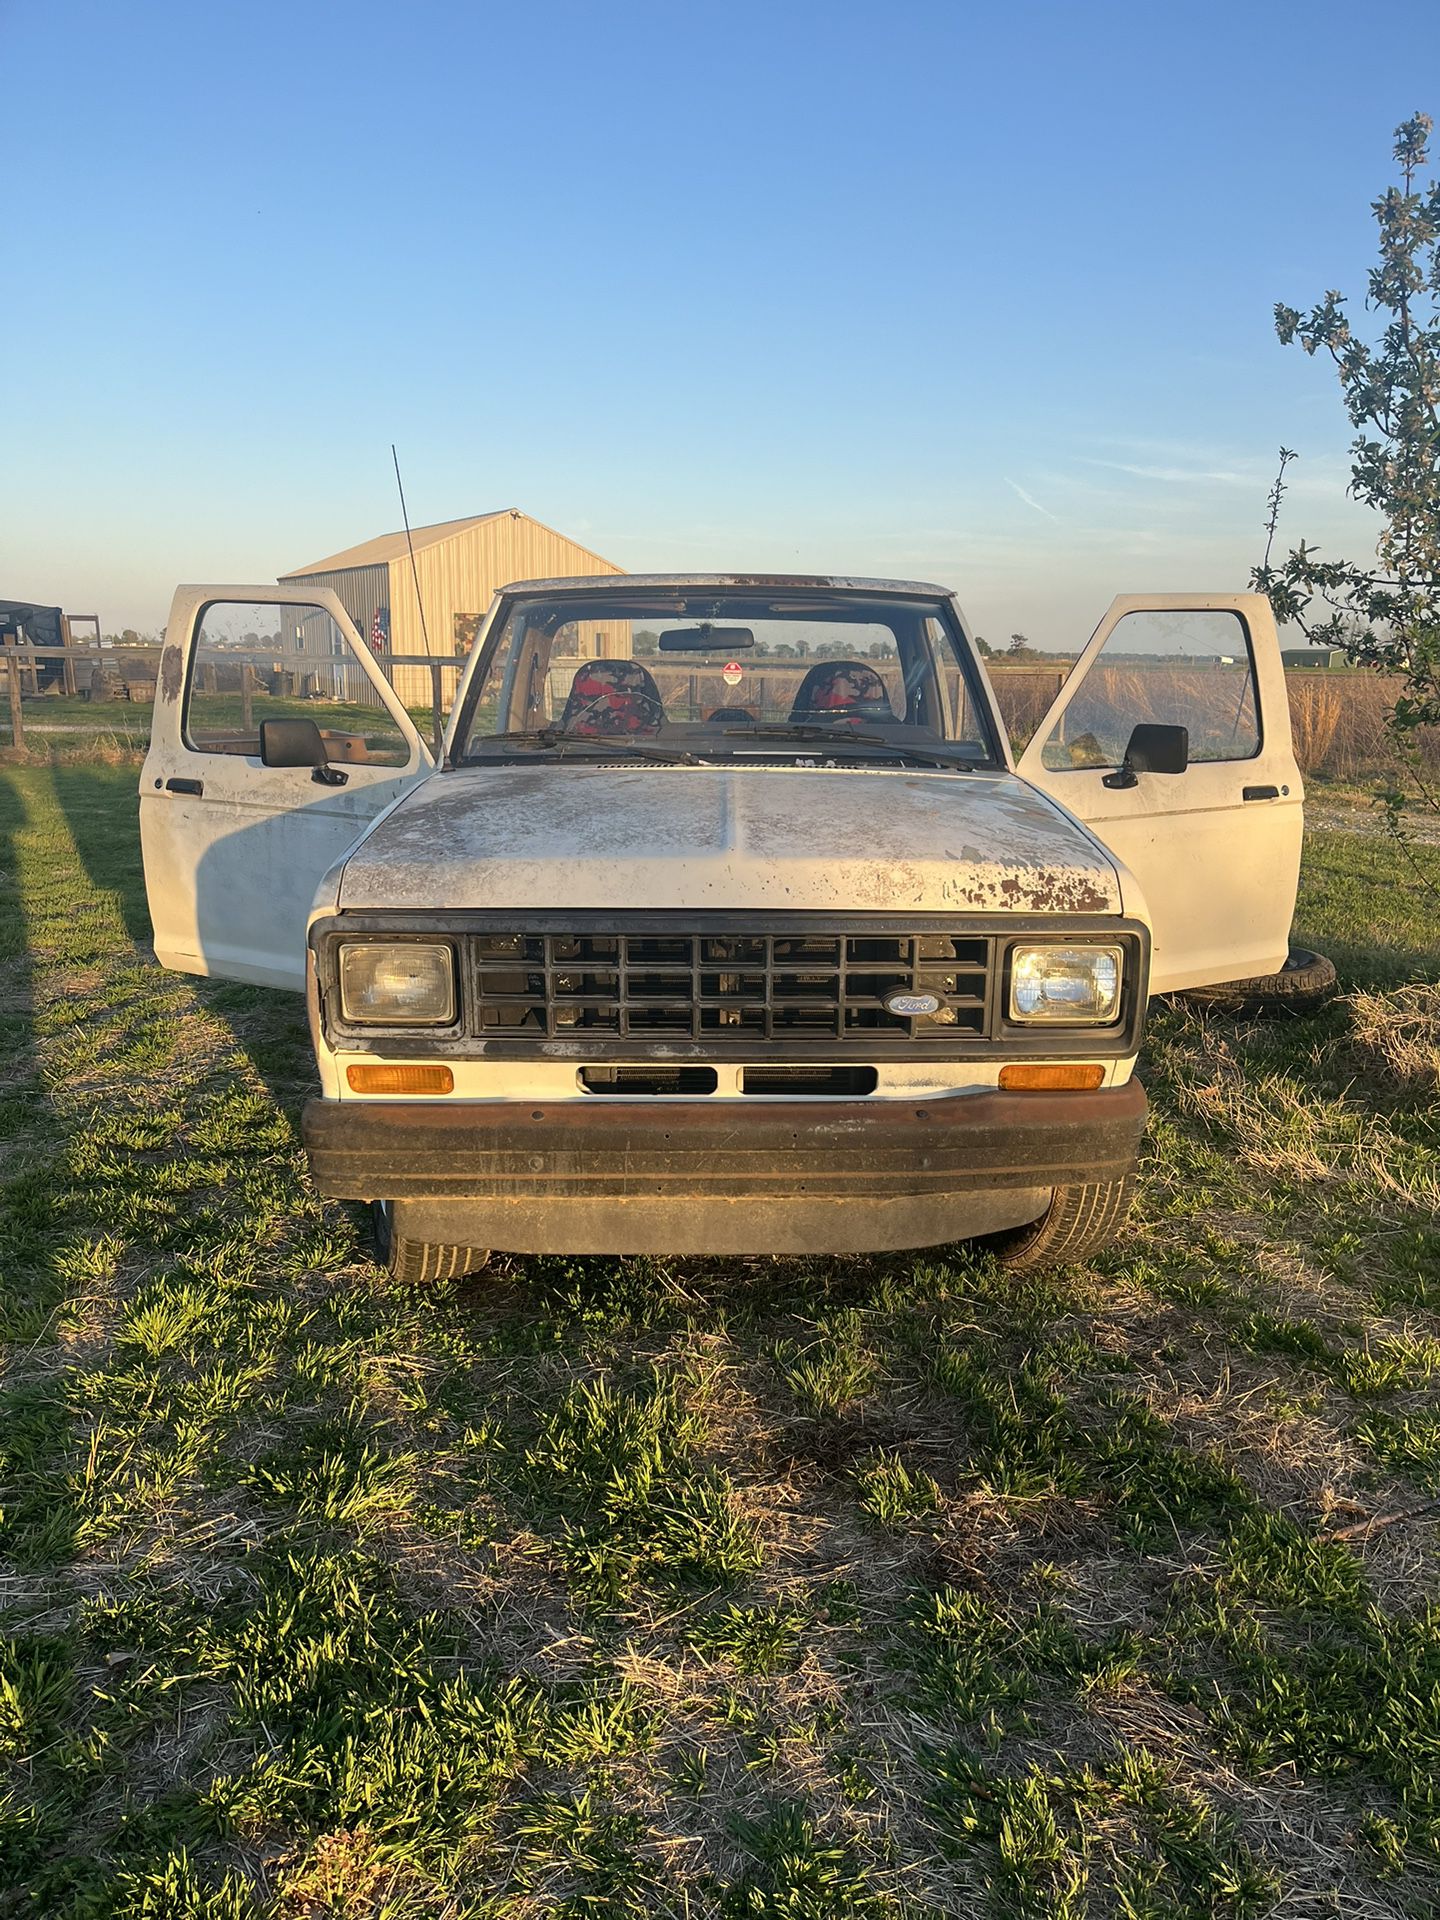 1988 Ford Ranger